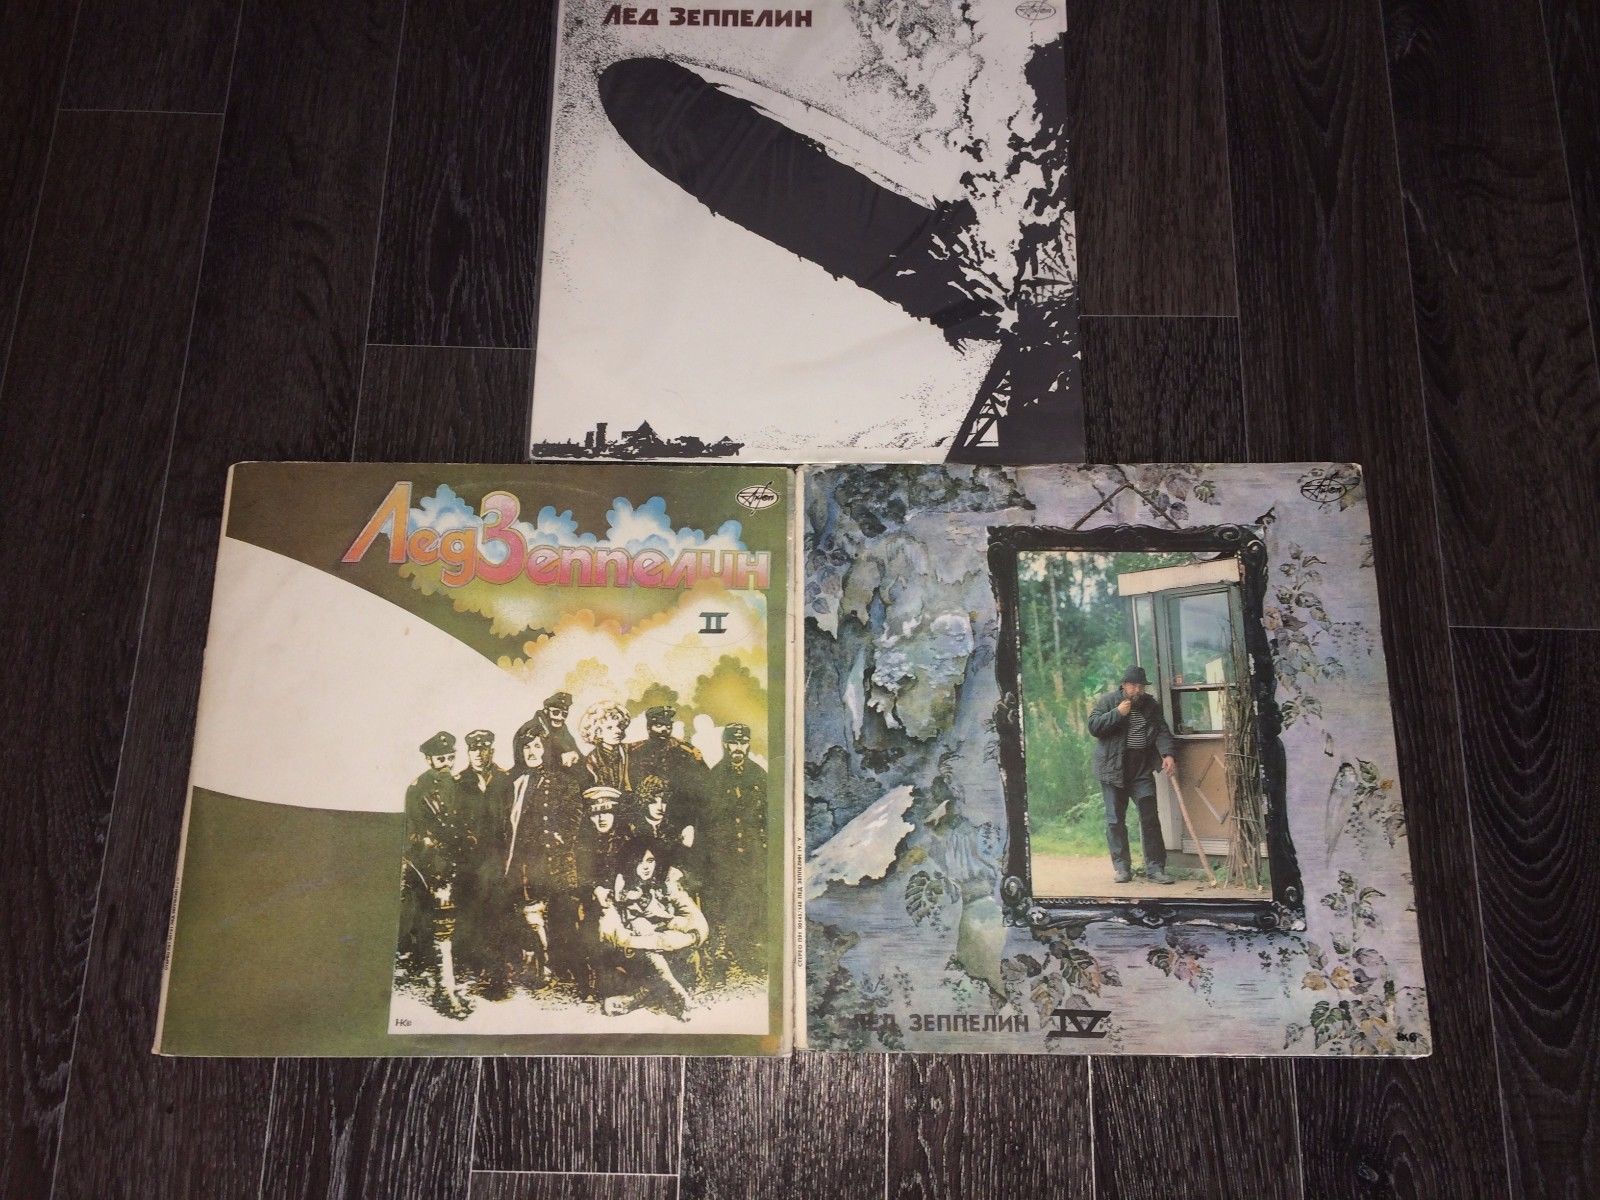 popsike.com - Led Zeppelin 5 Lp vinyl russia ?????? - auction details